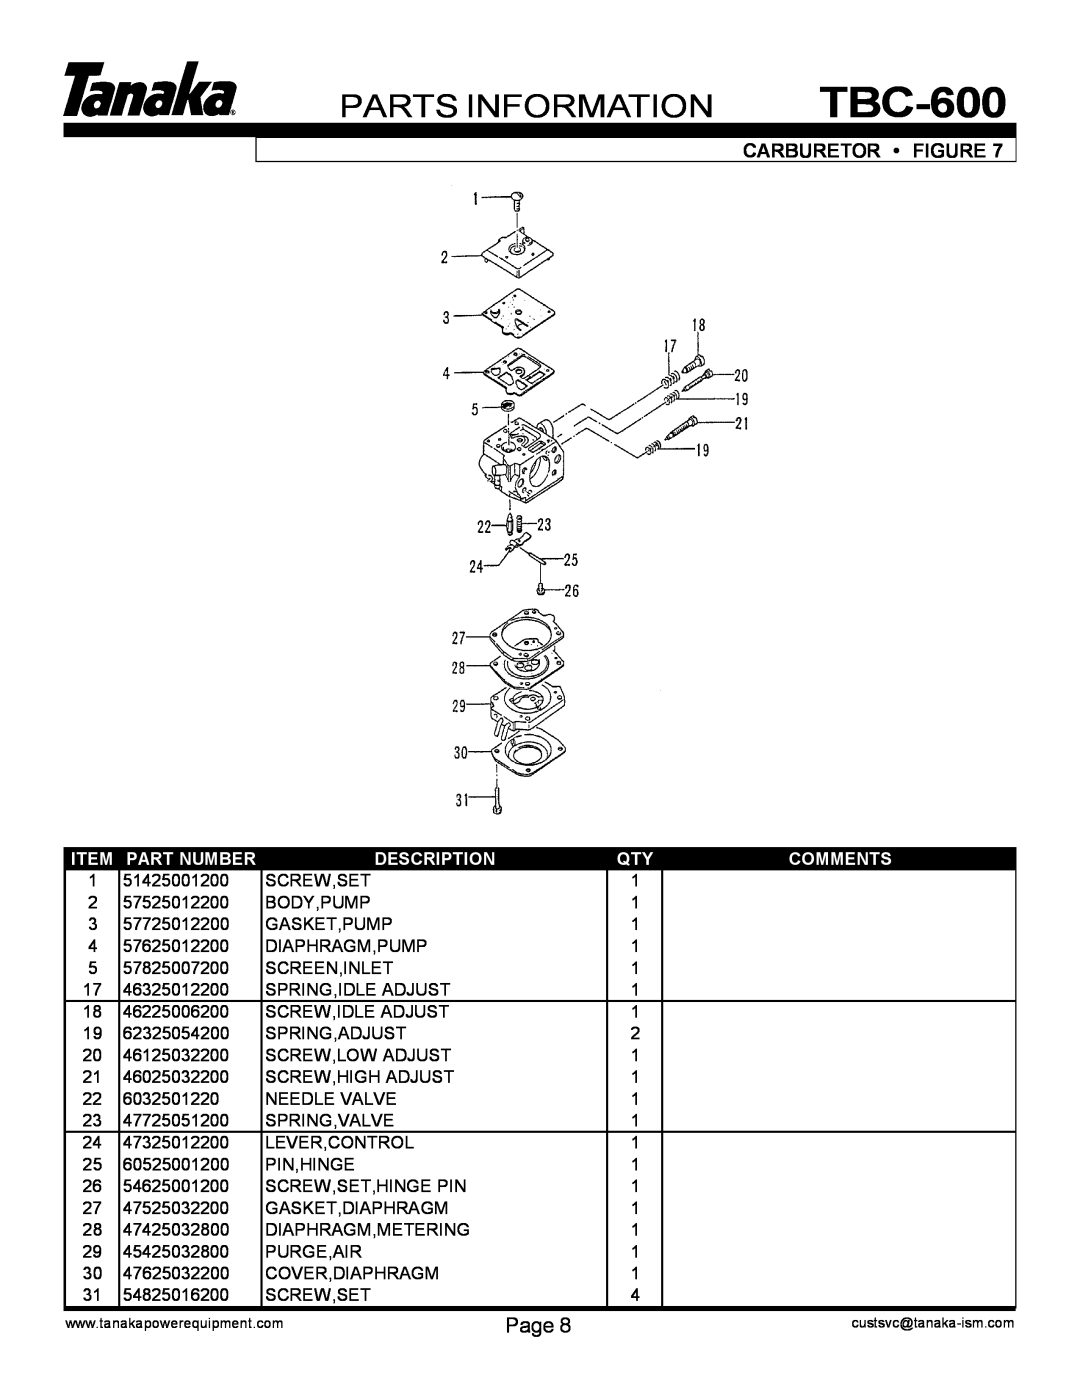 Tanaka TBC-600 manual Parts Information, Carburetor Figure, Page, Item Part Number, Description, Comments 